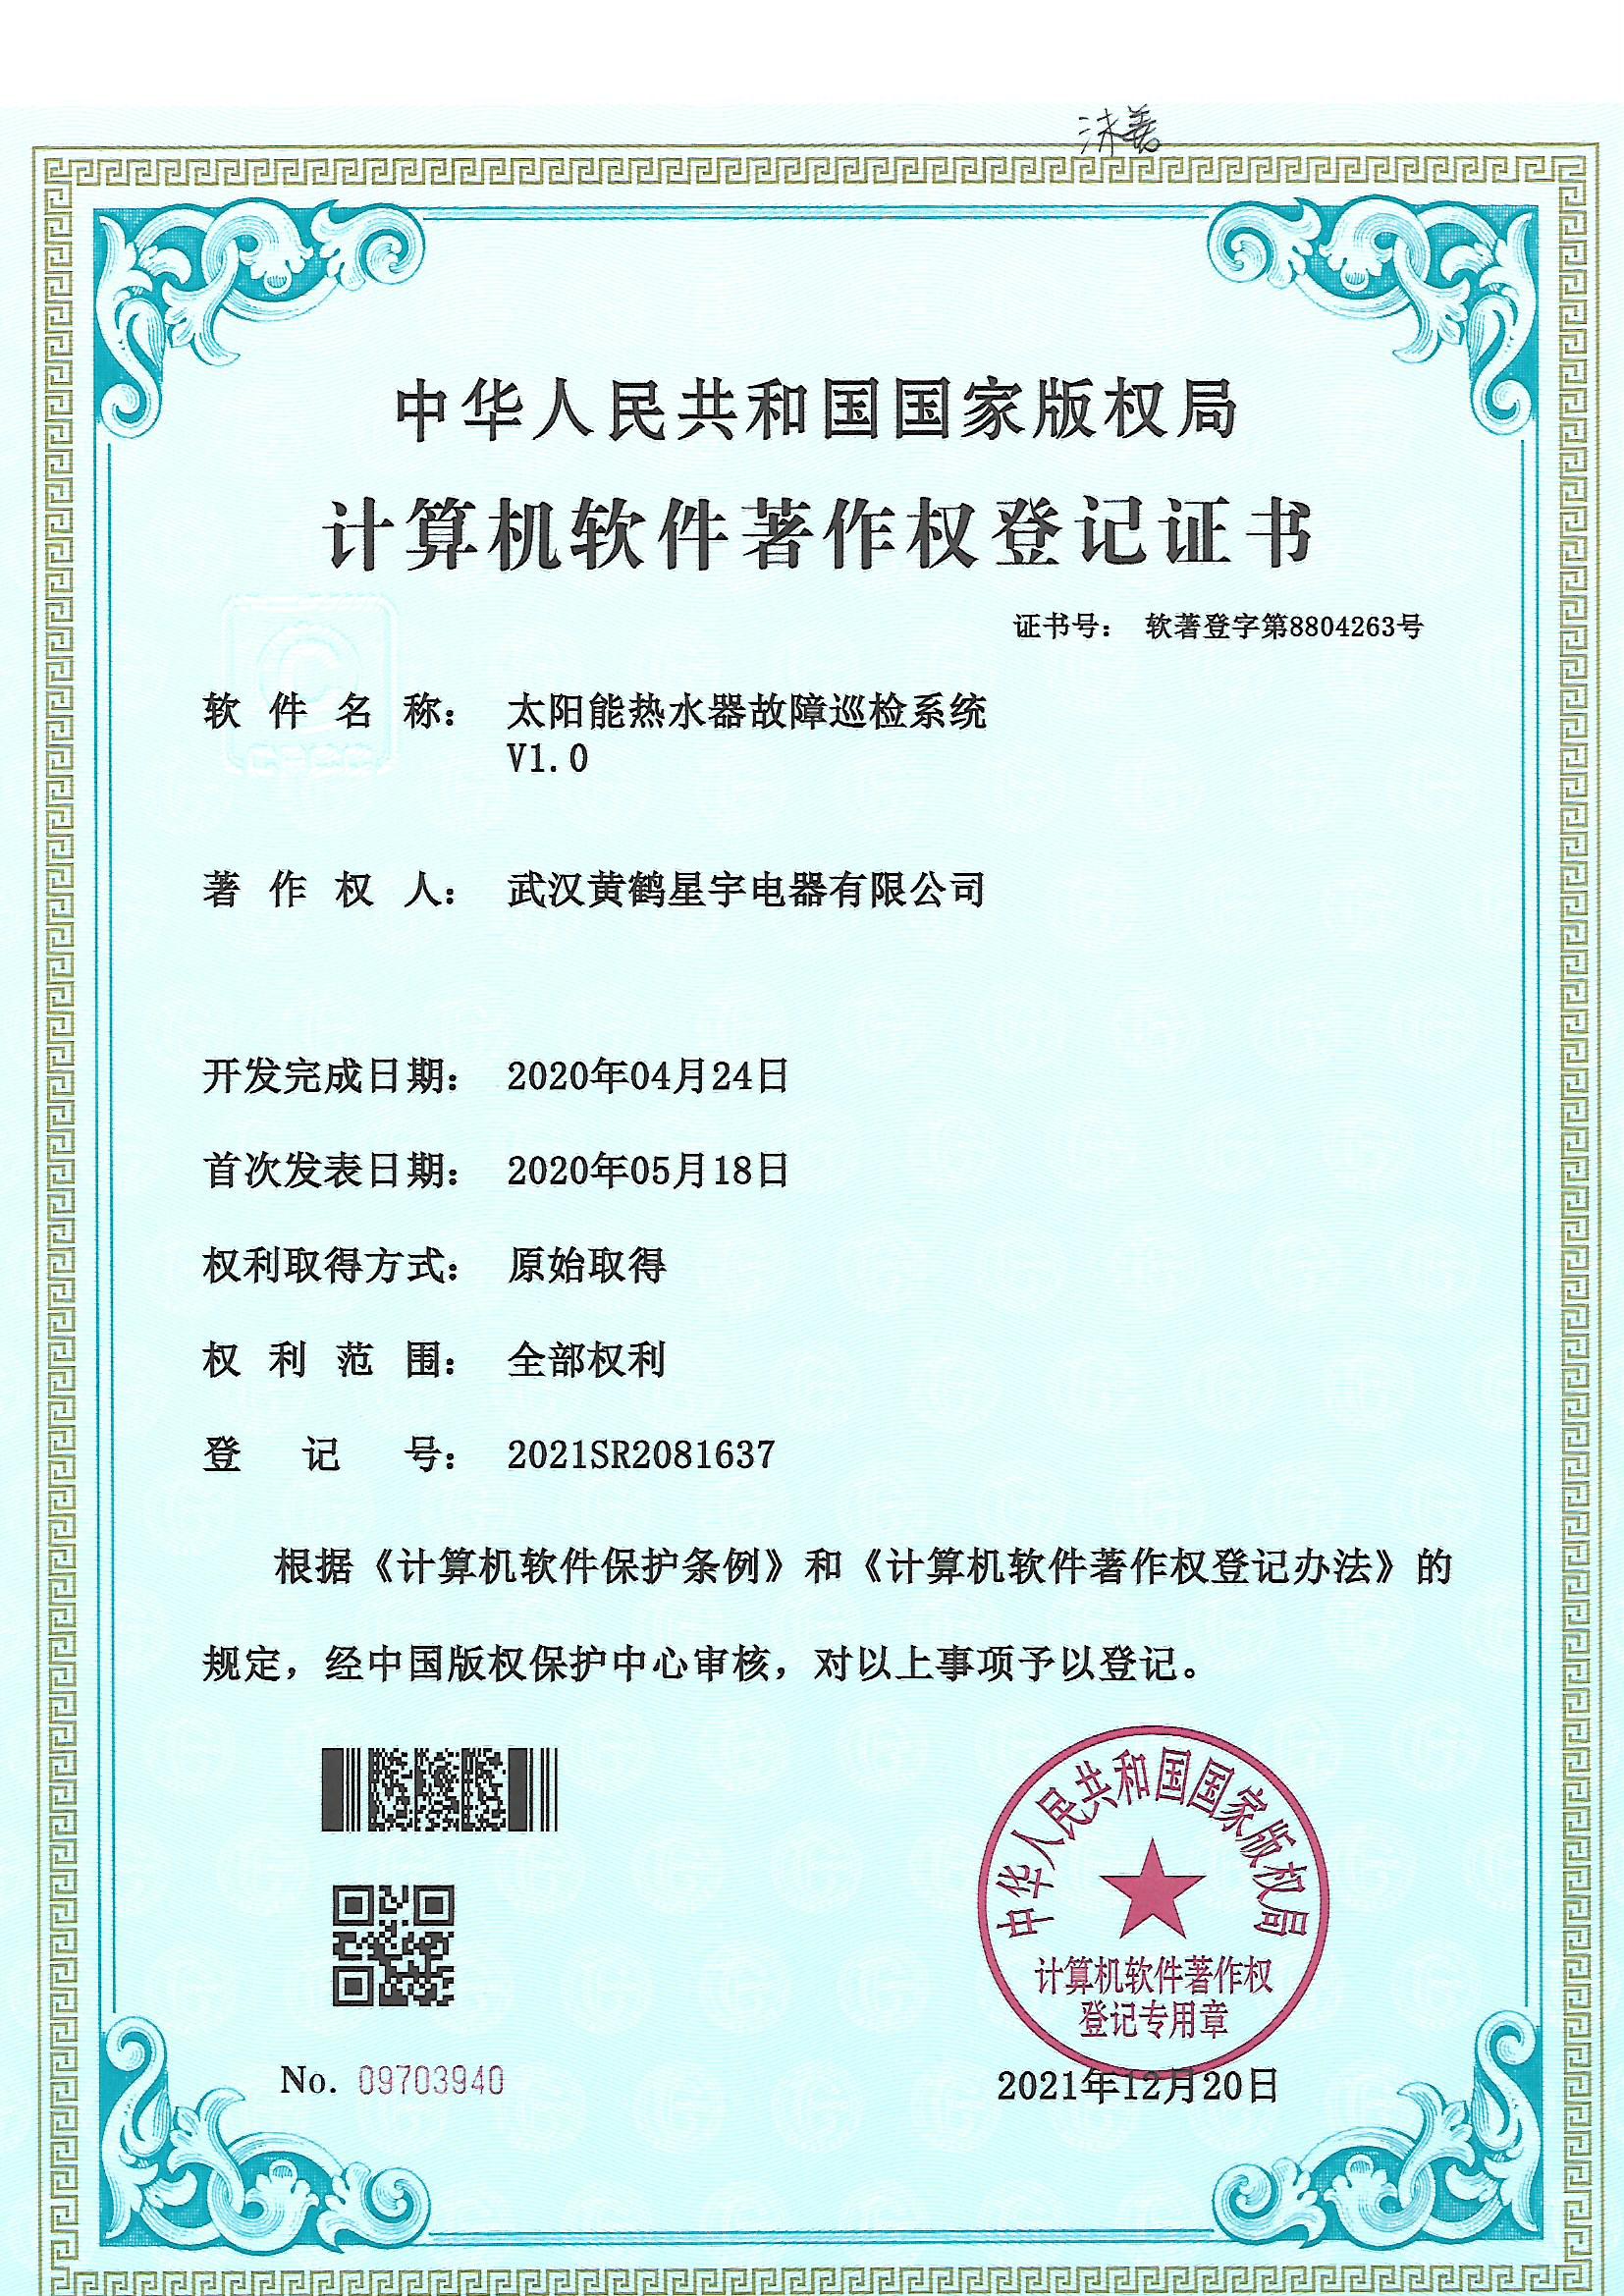 武汉黄鹤星宇电器有限公司--太阳能热水器计算机软件著作权登记证书